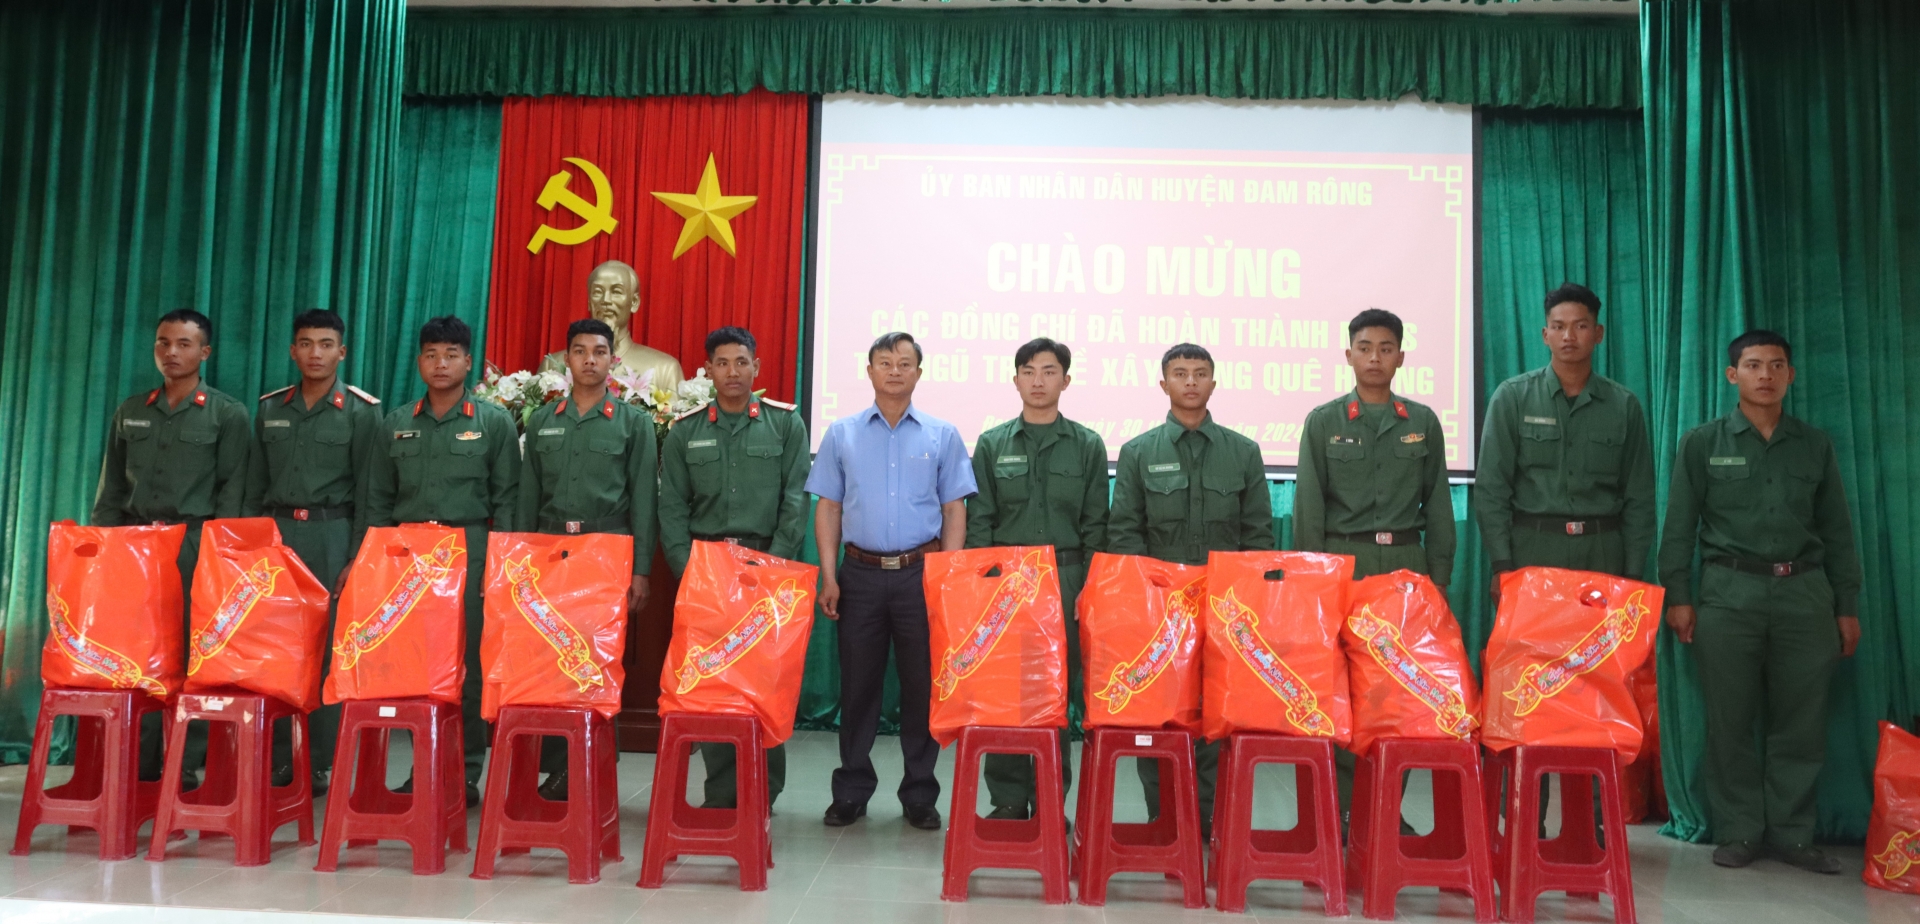 Đồng chí Trương Hữu Đồng – Chủ tịch UBND huyện trao tặng quà cho các quân nhân

